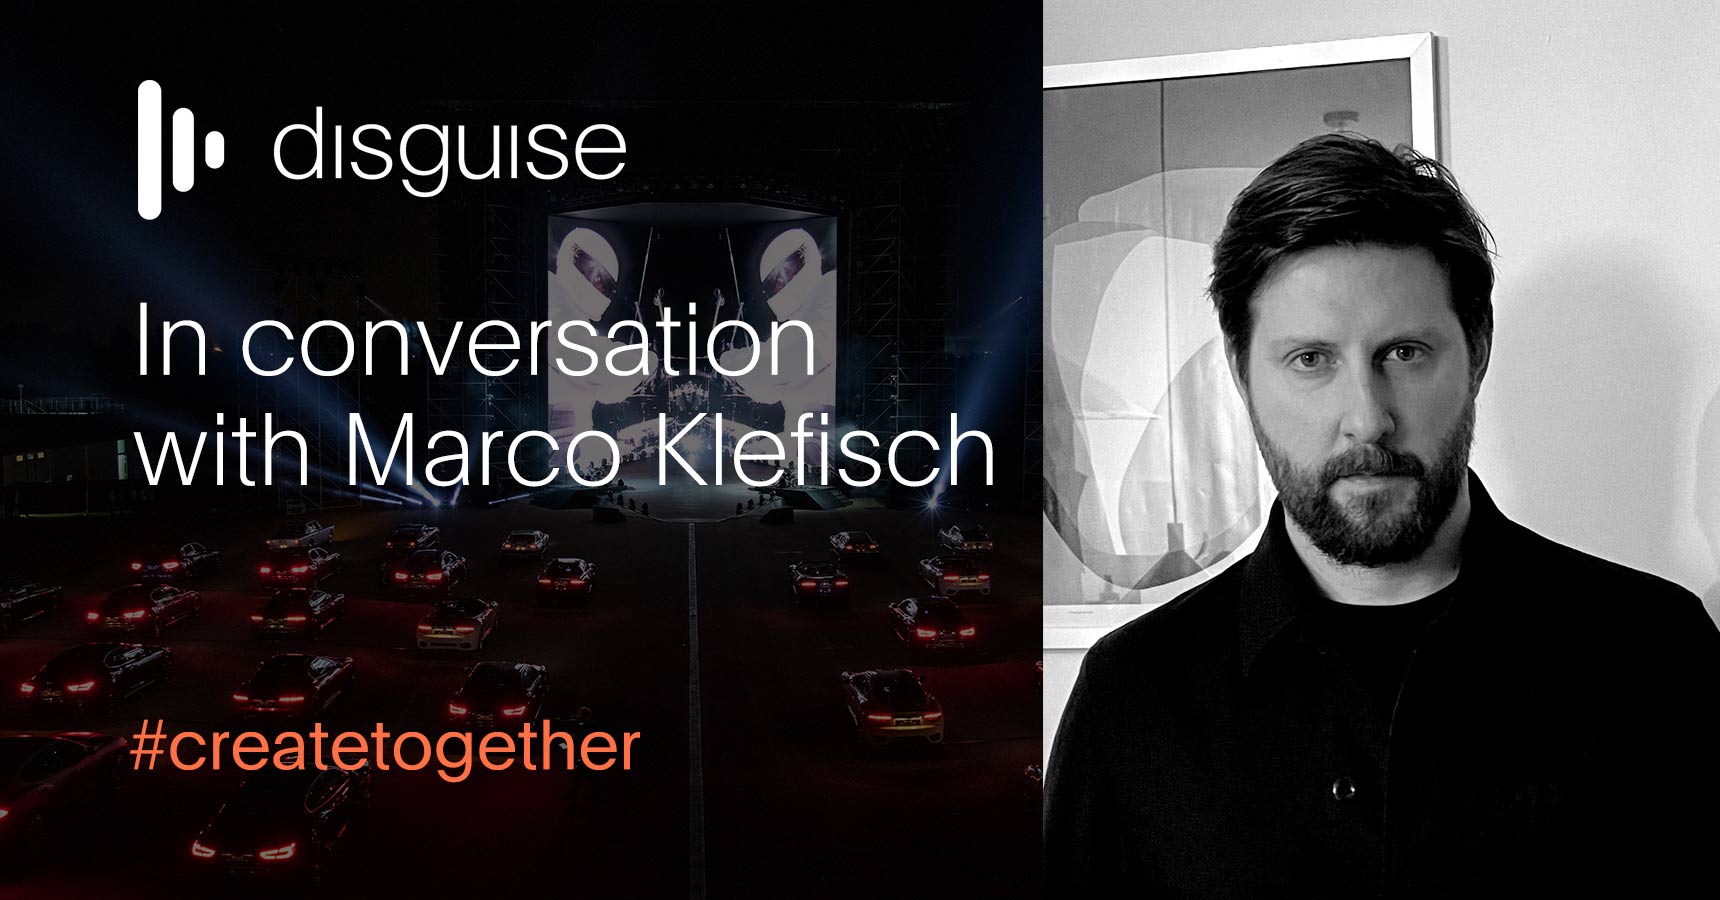 In conversation with Marco Klefisch